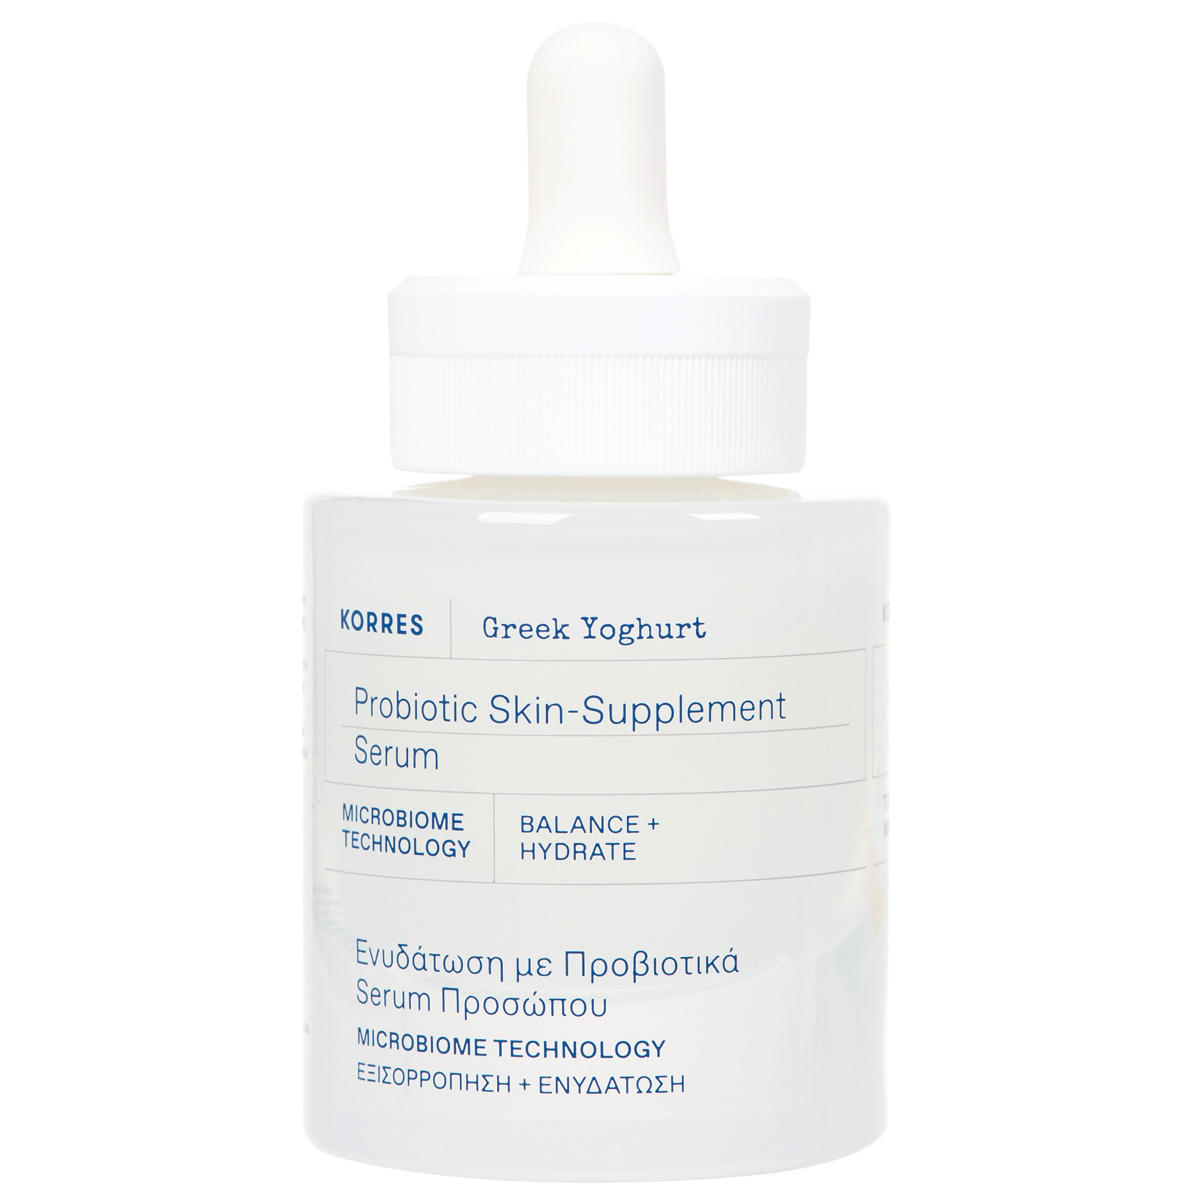 KORRES Greek Yoghurt Probiotic Skin-Supplement Serum 30 ml - 1